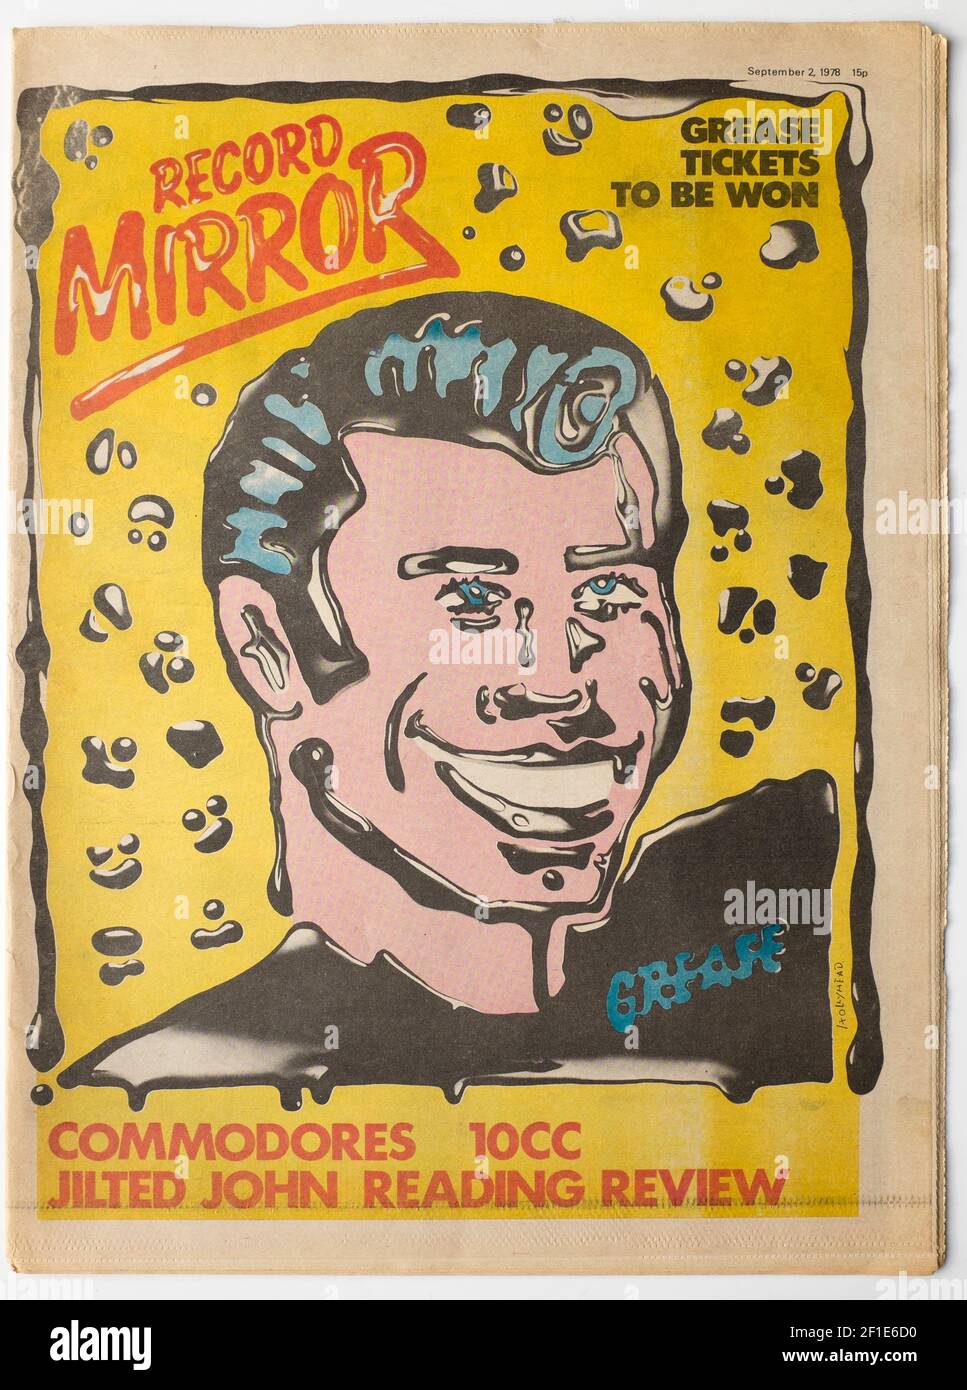 Old Vintage édition des années 1970 de Record Mirror Pop Music Magazine Couverture de John Travolta Banque D'Images